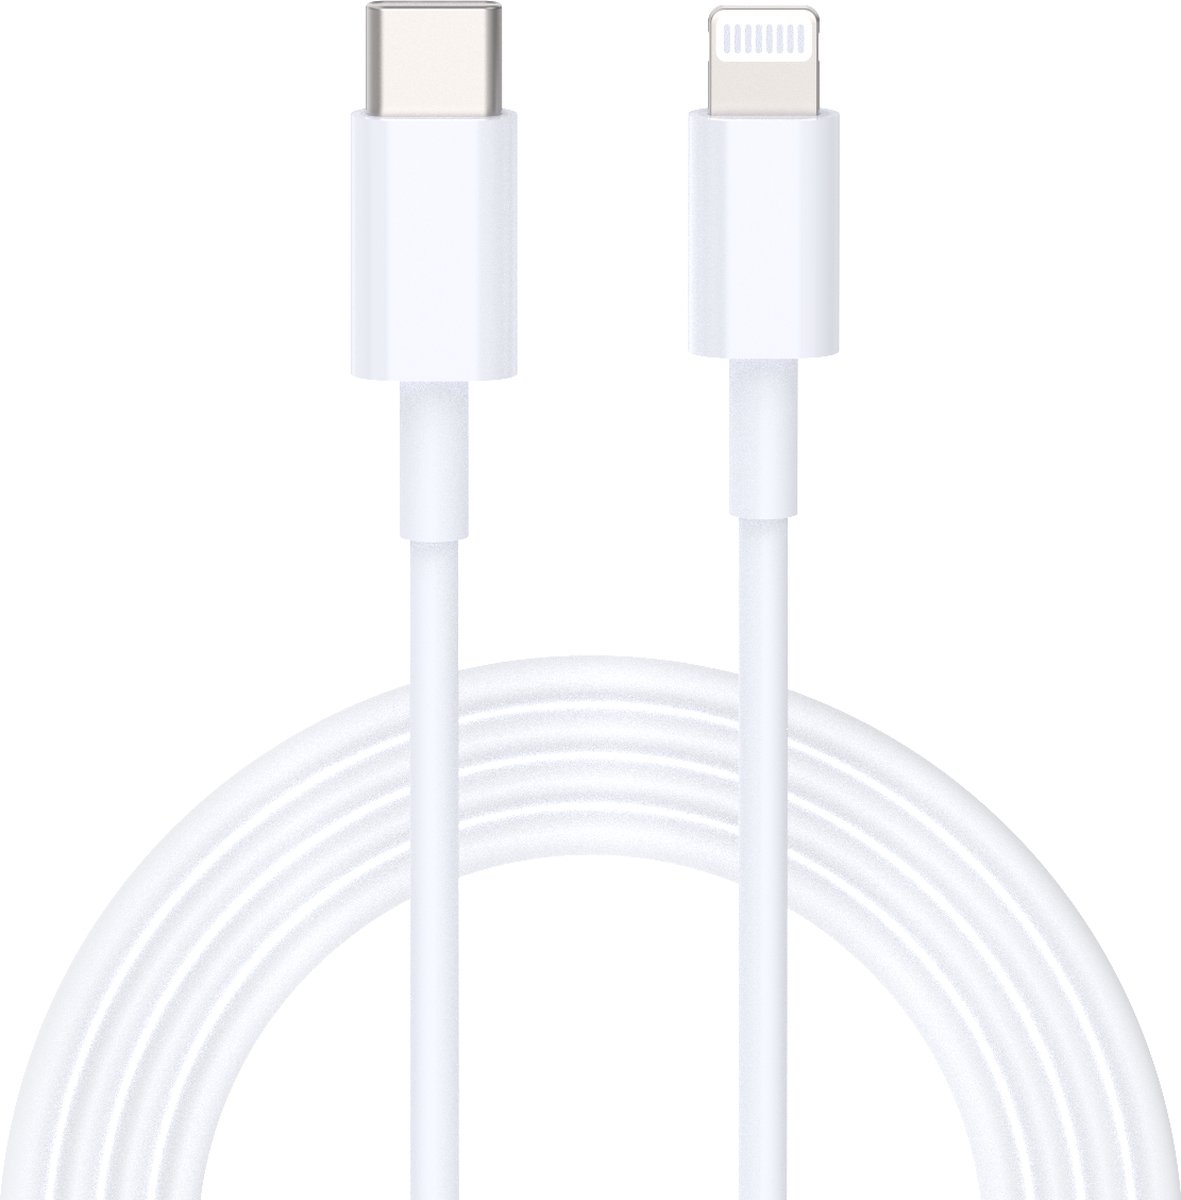 iPhone PD kabel geschikt voor Apple iPhone 5 / 6 / 7 / 8 / X / XS / XR / 11 / 12 / 13 / 14 / Mini / Pro Max - iPhone kabel - iPhone oplaadkabel - USB-C / Type-C Lightning USB kabel - iPhone Snellader - iPhone laadkabel - 3 Meter - LuxeBass